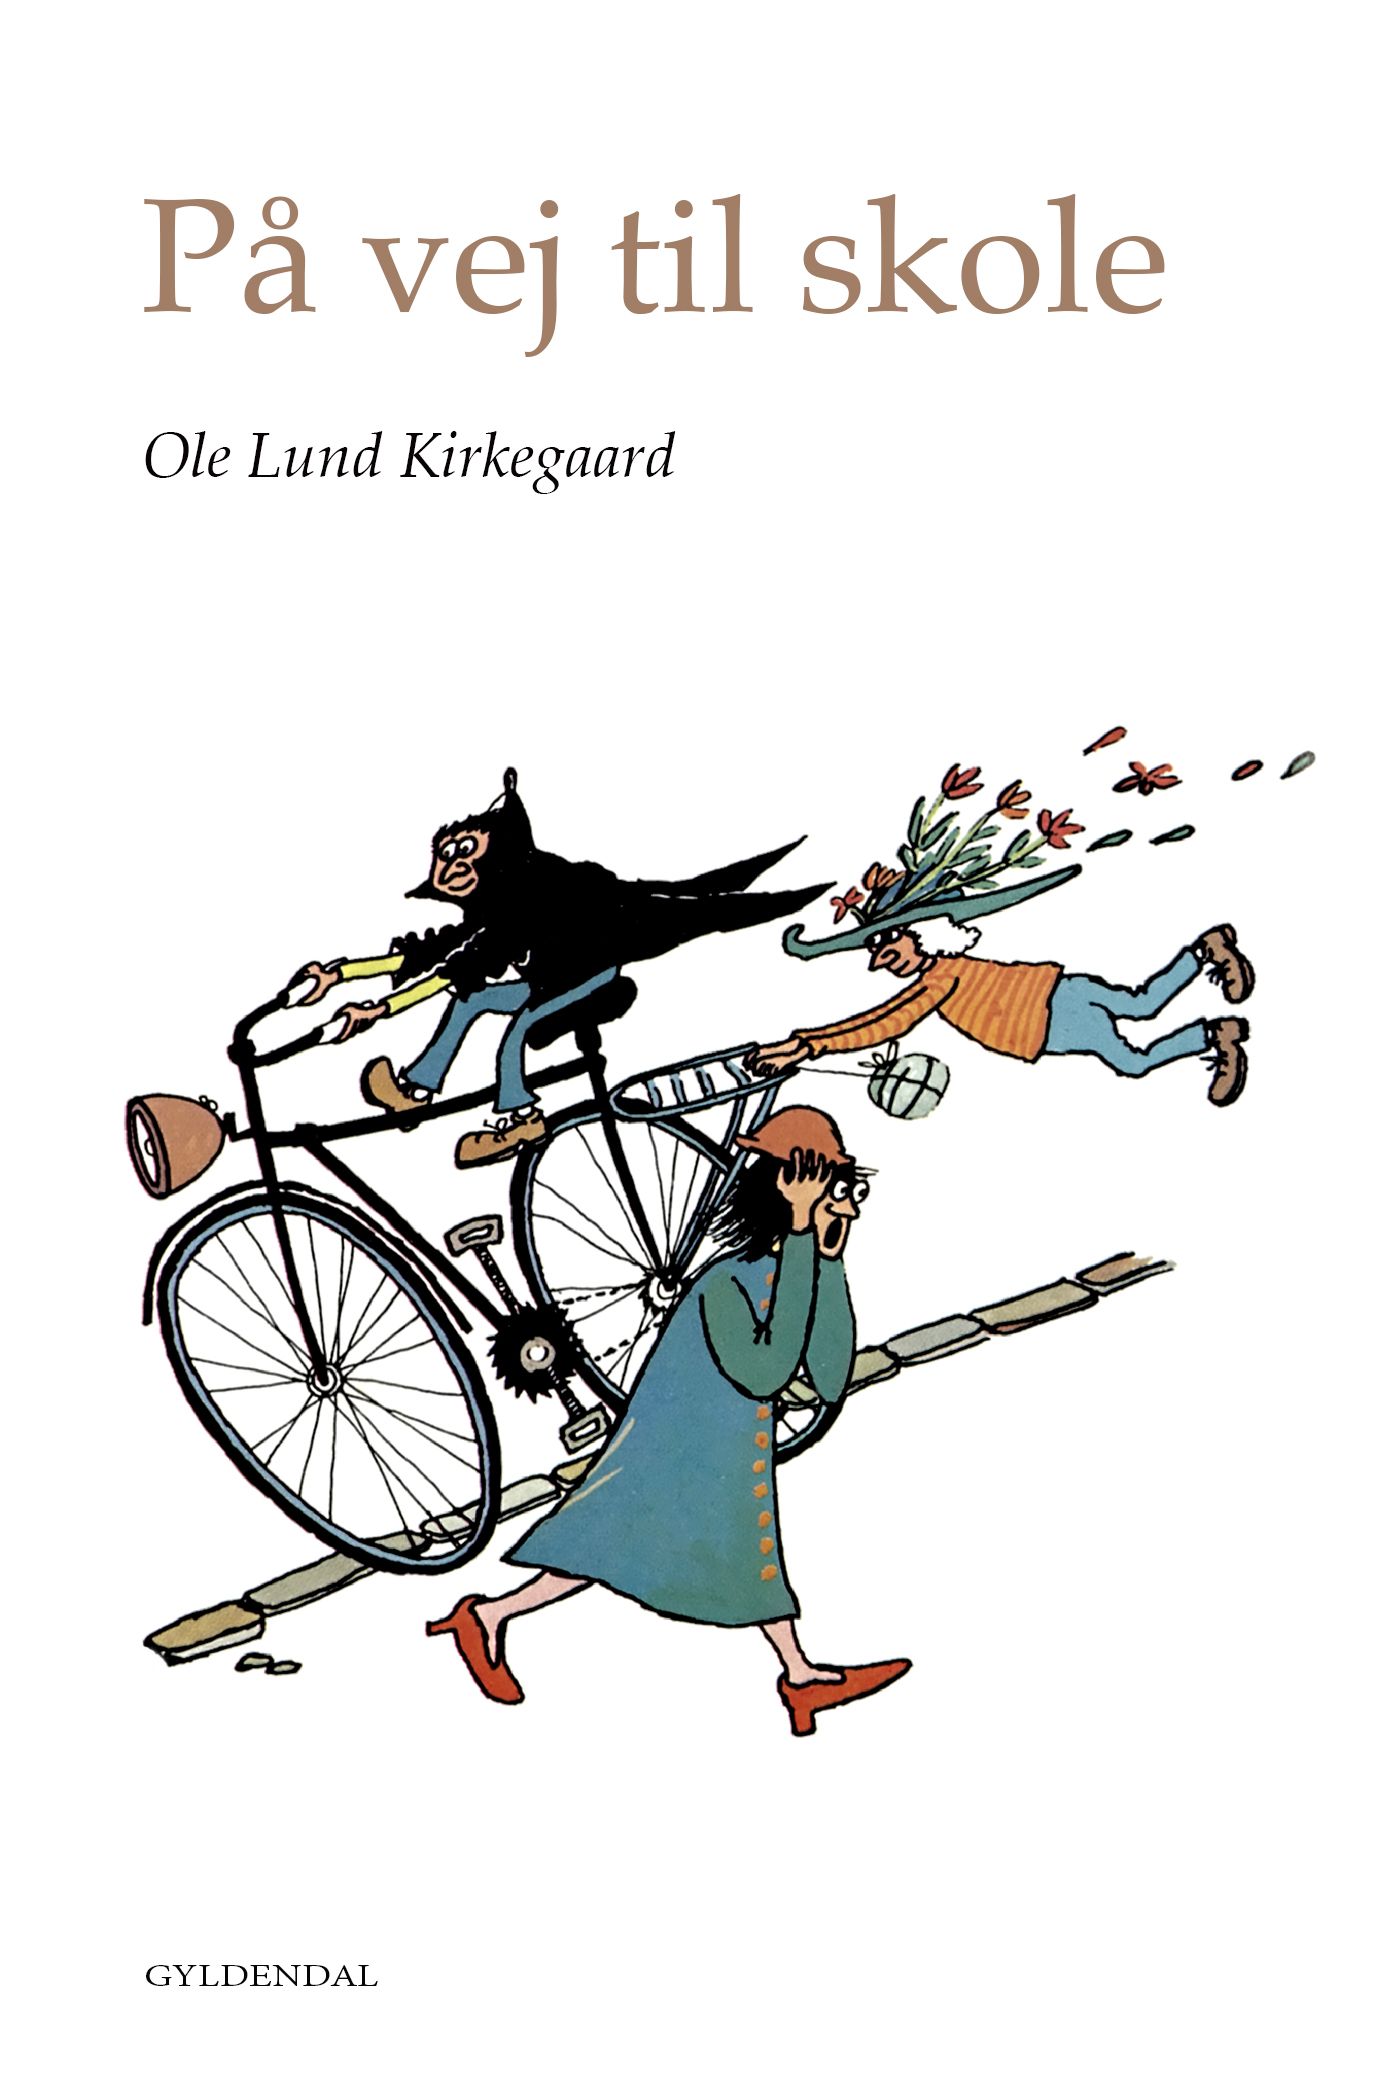 På vej til skole, e-bok av Ole Lund Kirkegaard